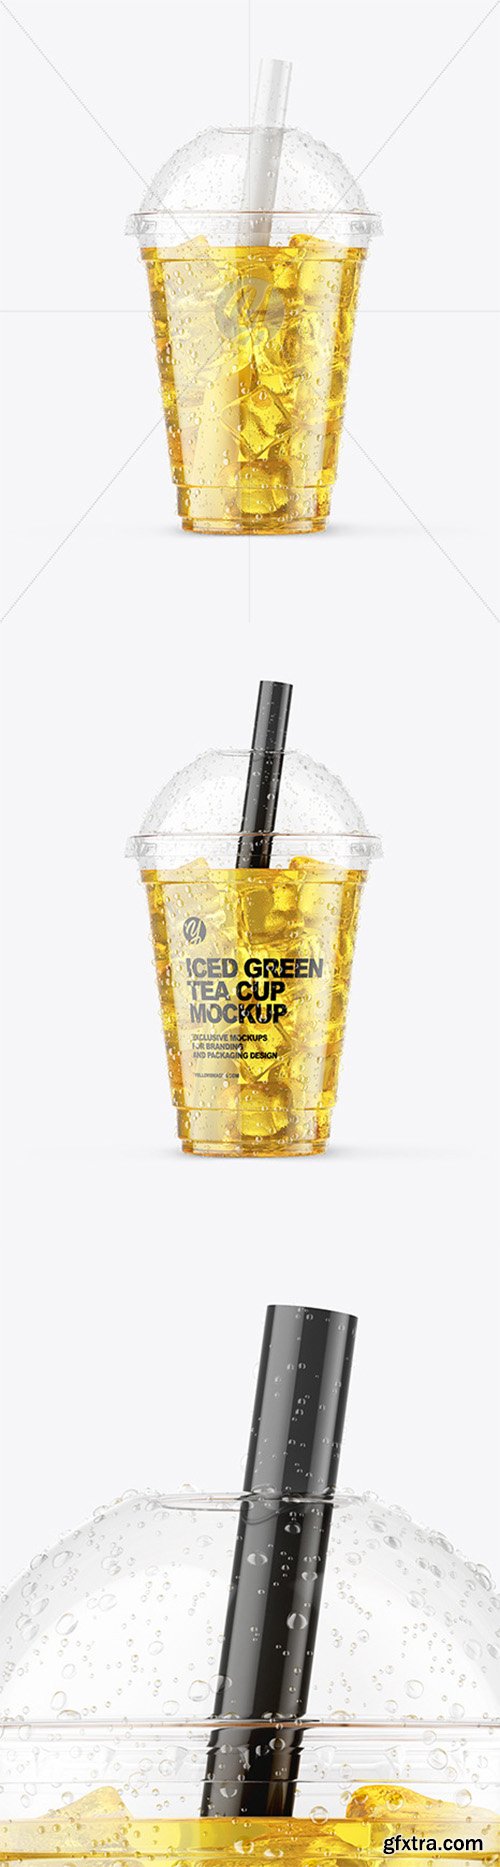 Iced Green Tea Cup Mockup 64934